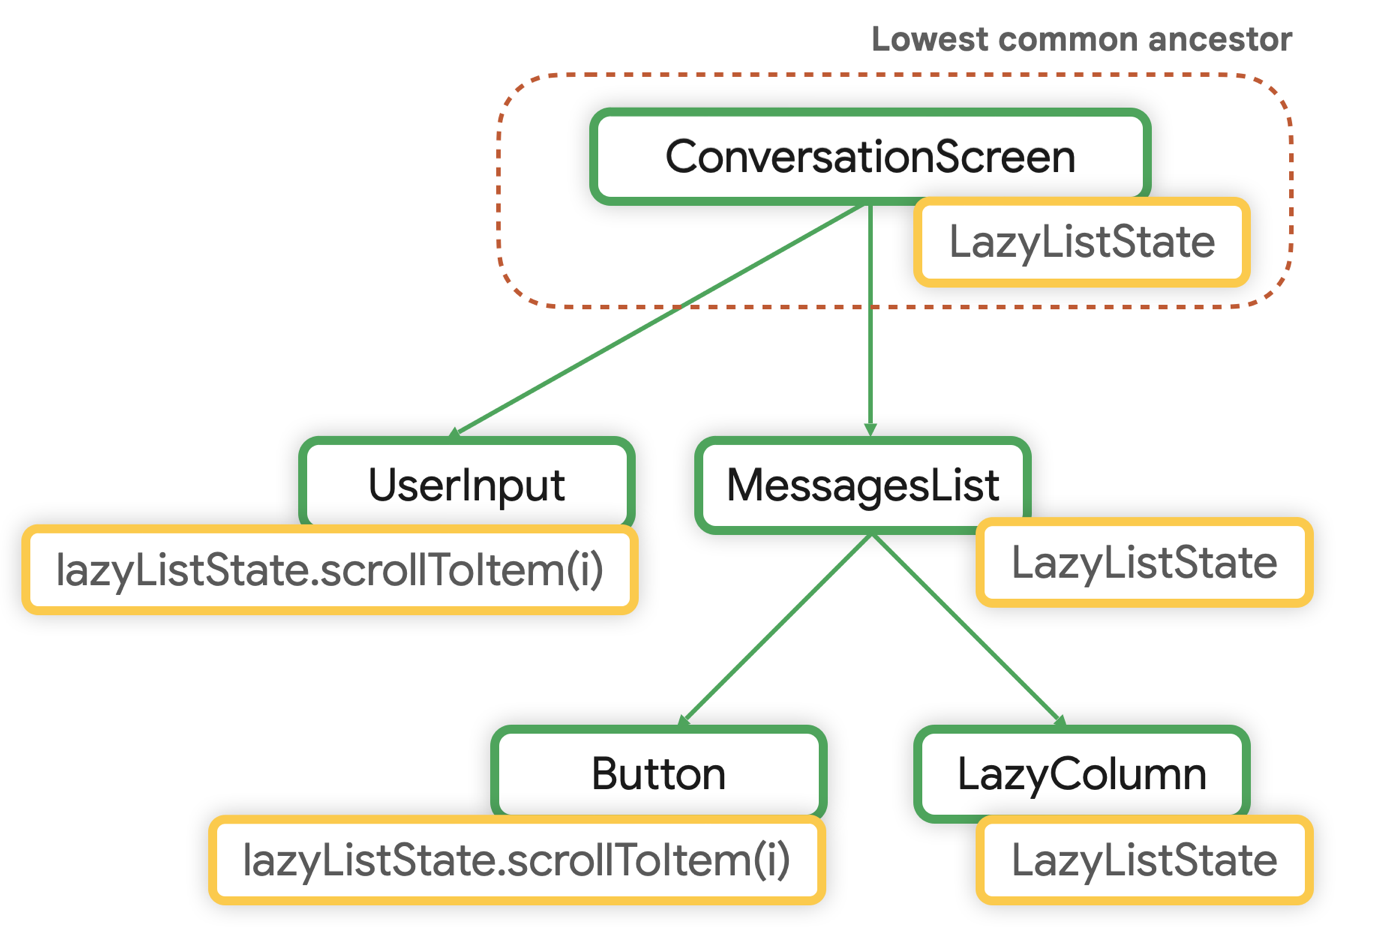 Niedrigster gemeinsamer Ancestor für LazyListState ist ConversationScreen